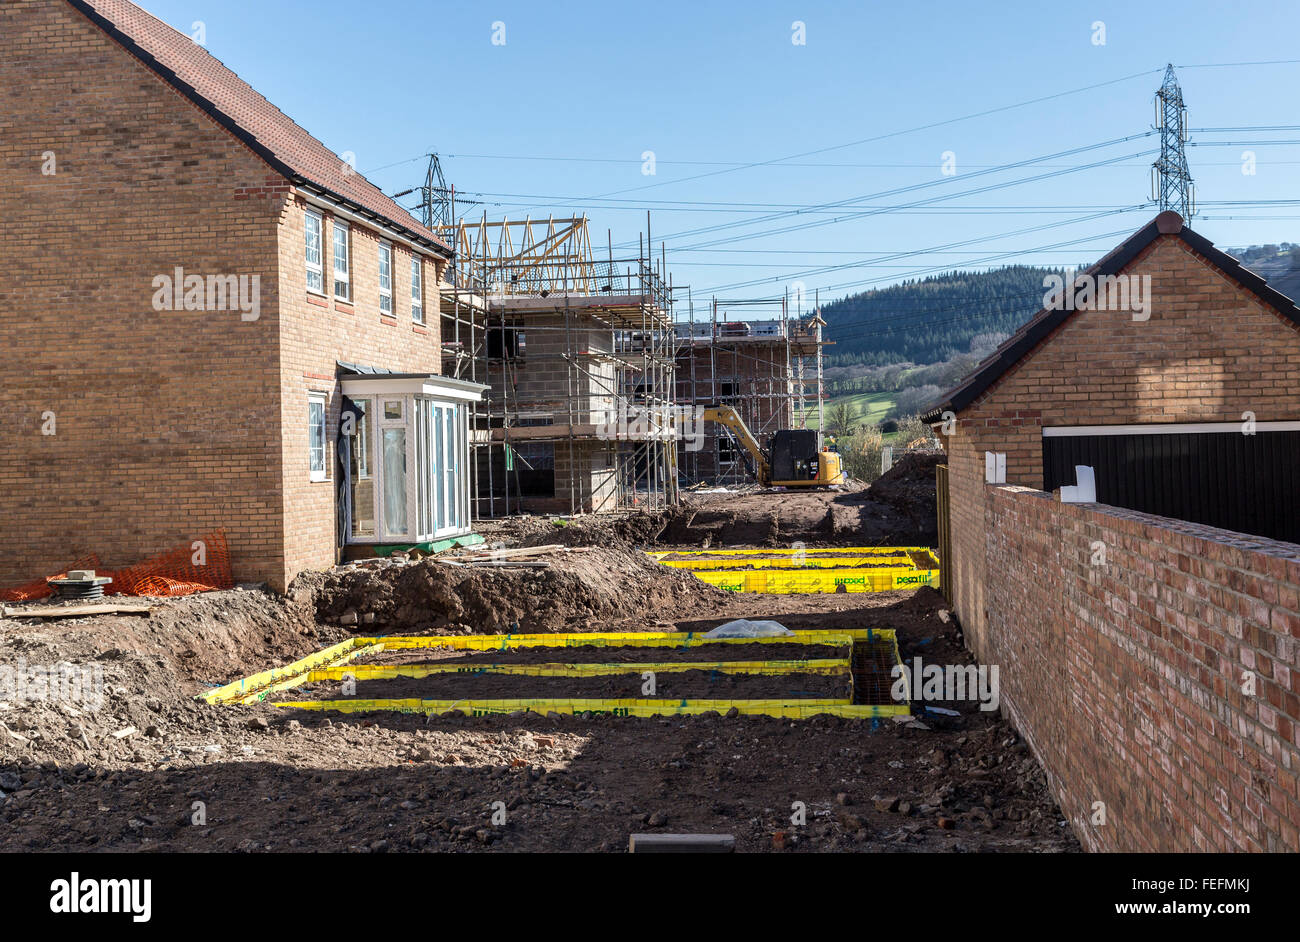 Nuova costruzione di case sulla station wagon con fondazioni essendo prevista, Llanfoist, Wales, Regno Unito Foto Stock